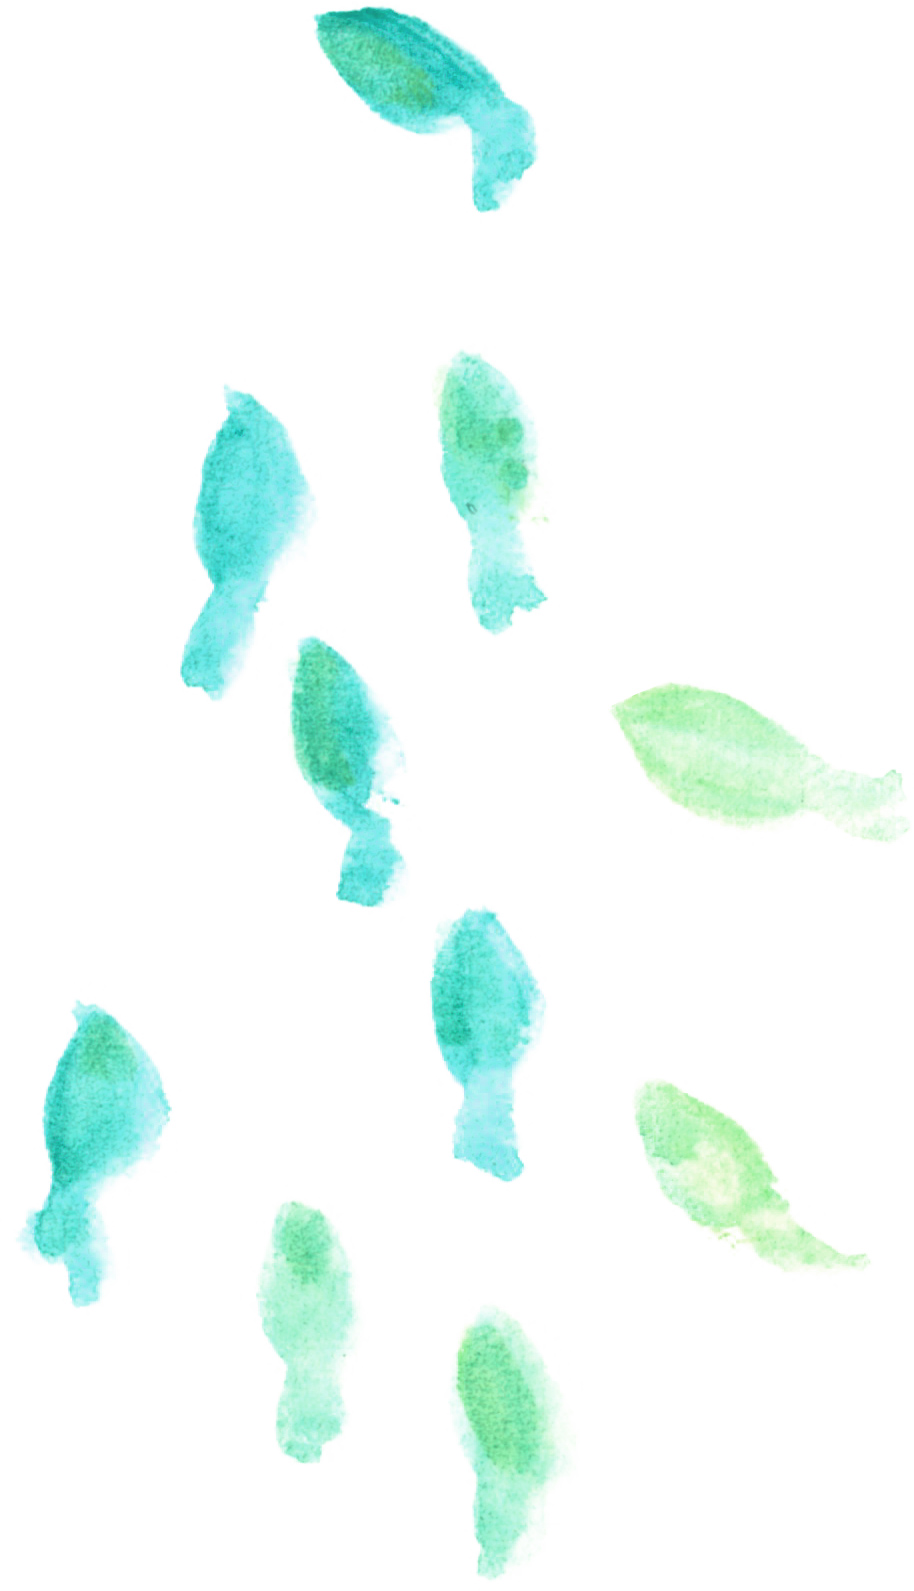 可愛いイラスト無料 水彩 金魚 青緑色 公式 イラスト素材サイト イラストダウンロード